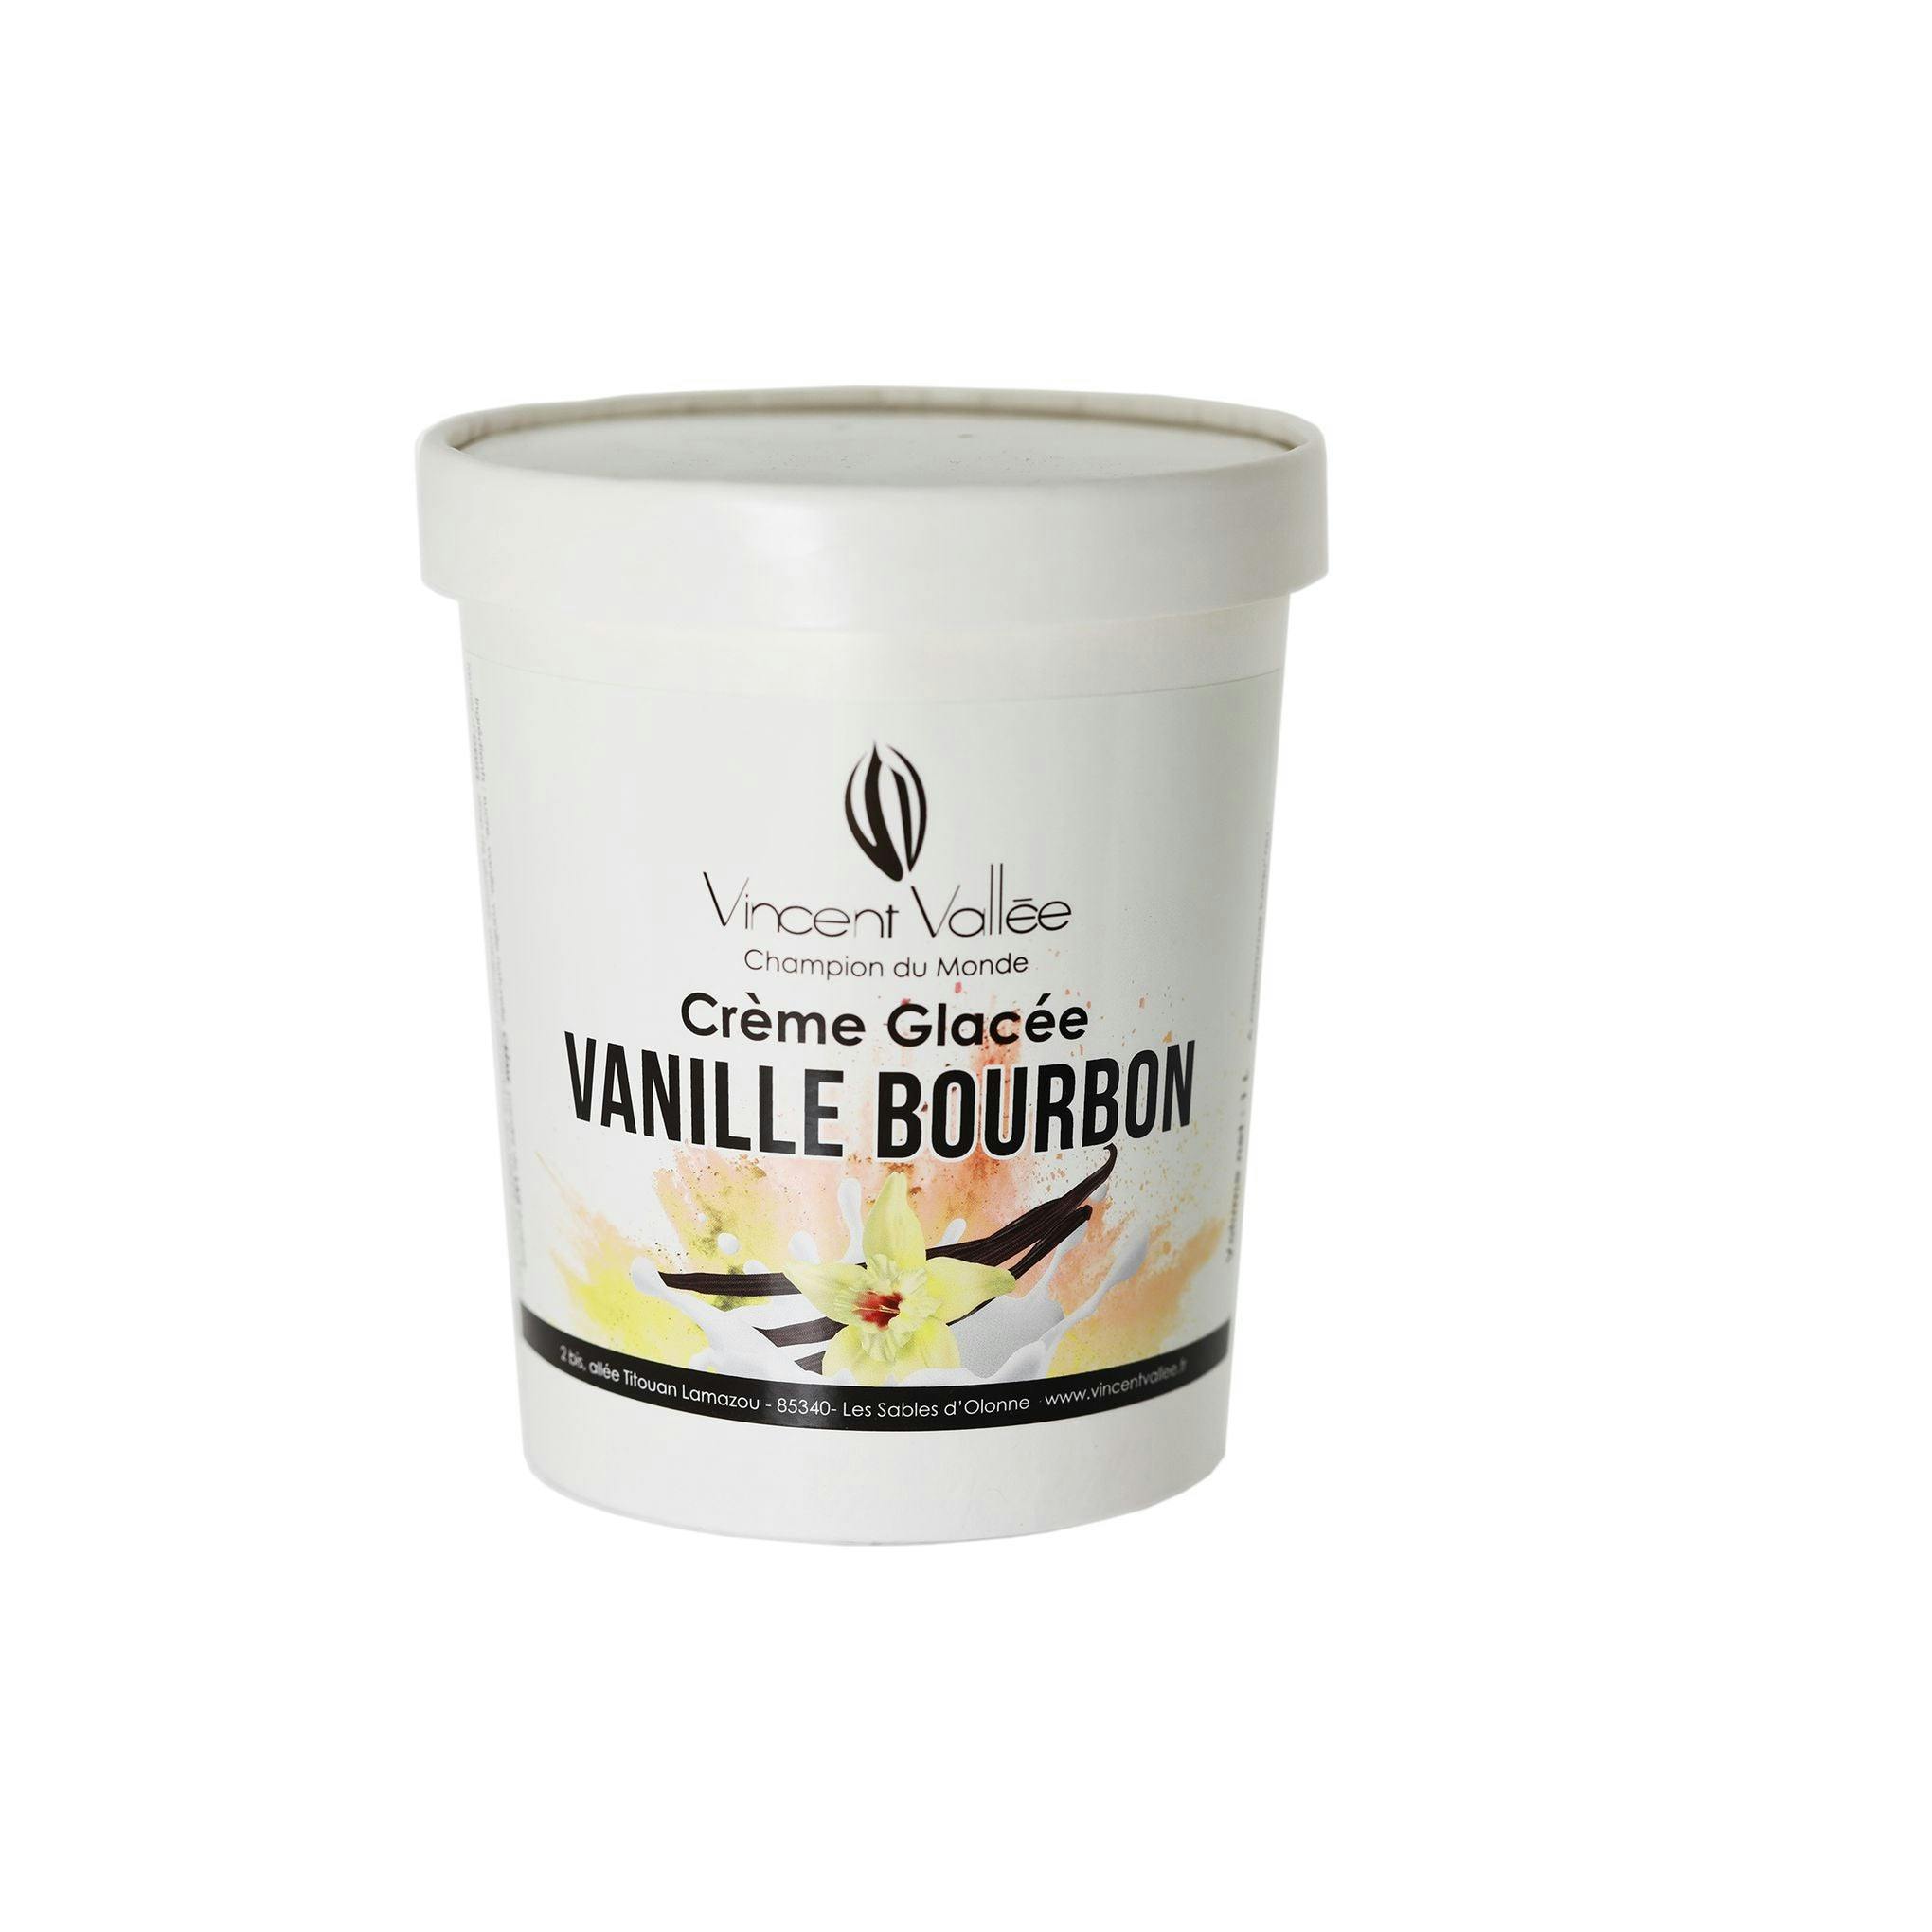 Crème glacée Vanille Bourbon - Vincent Vallée chocolatier champion du monde